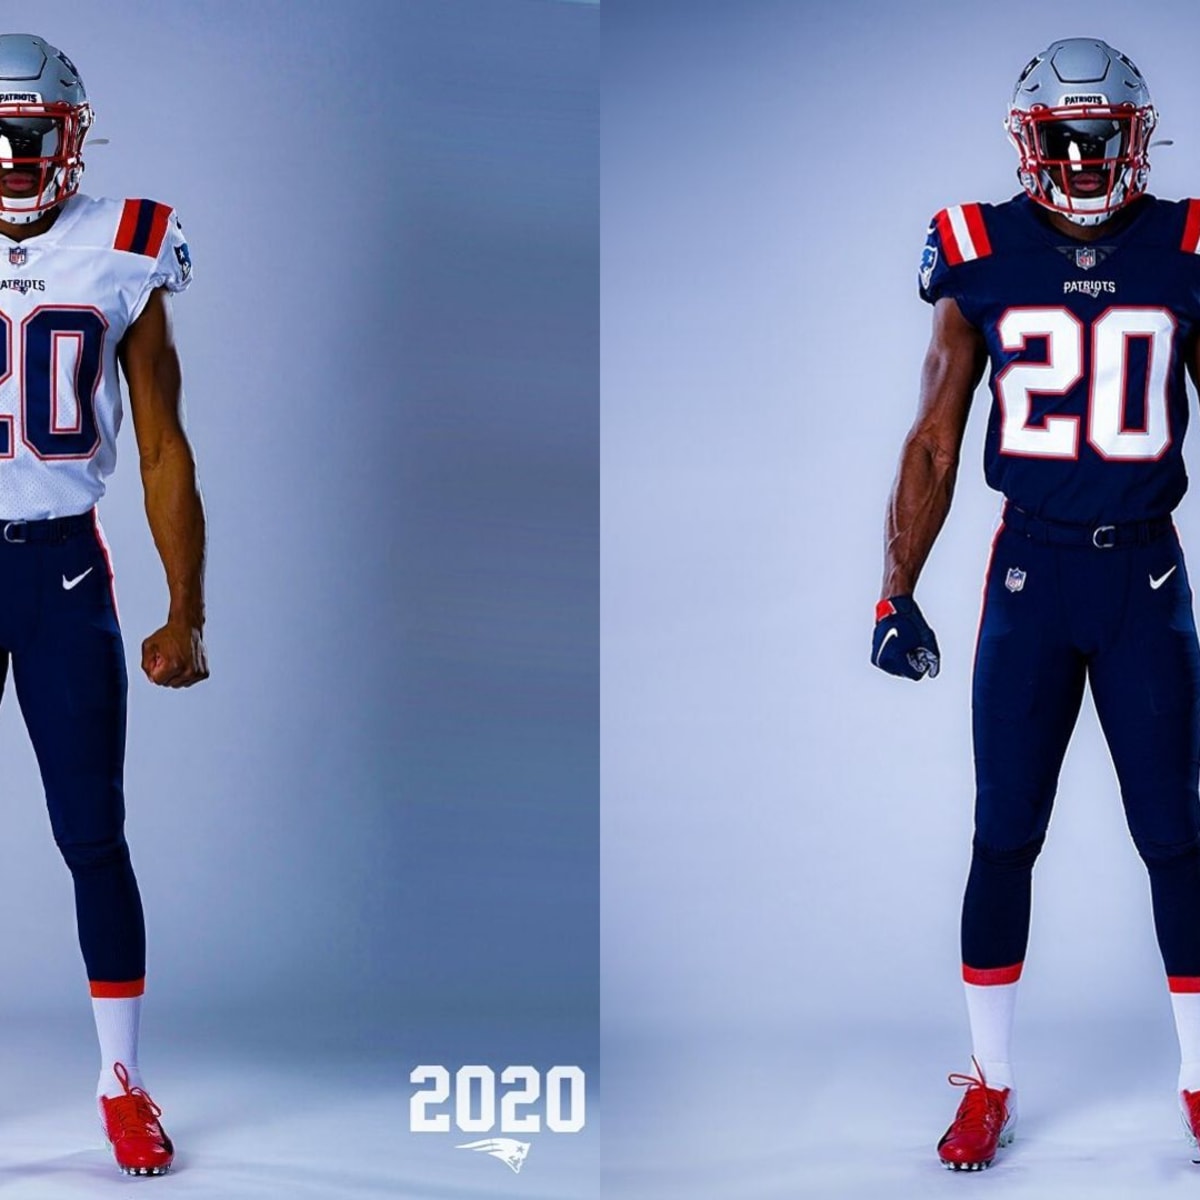 2020 patriots jerseys